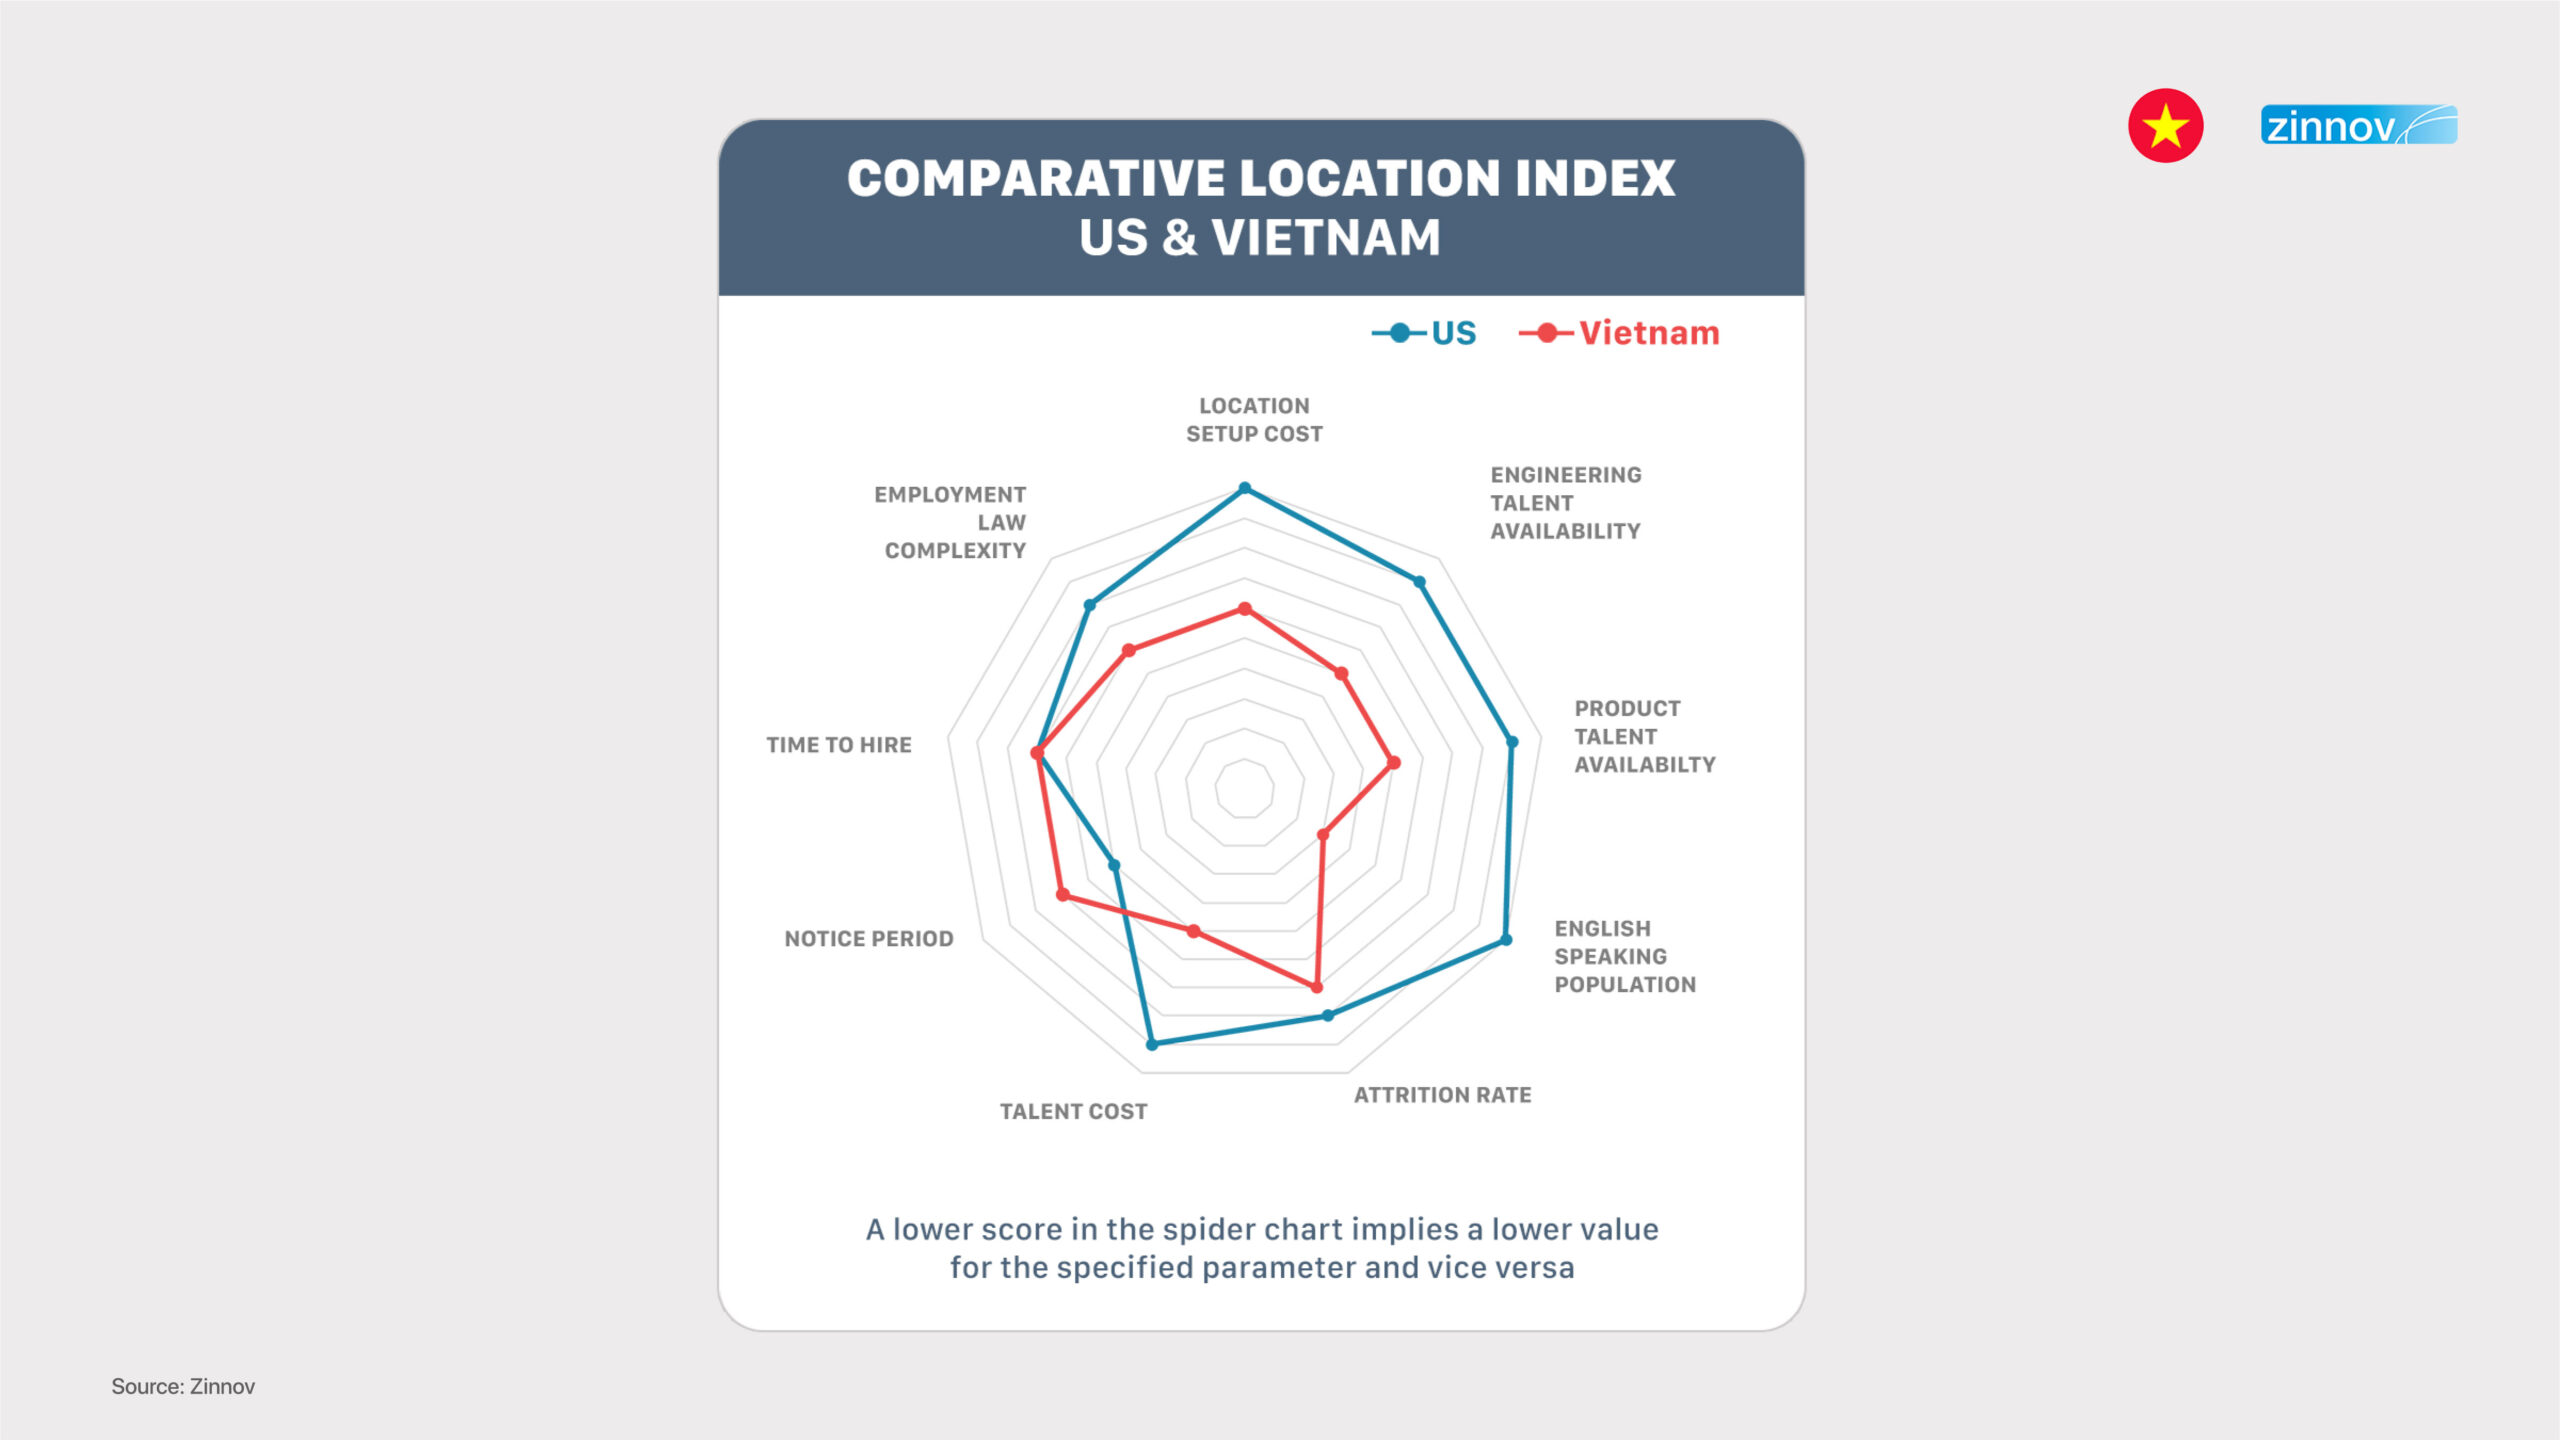 5. Ease of doing business, Vietnam vs US